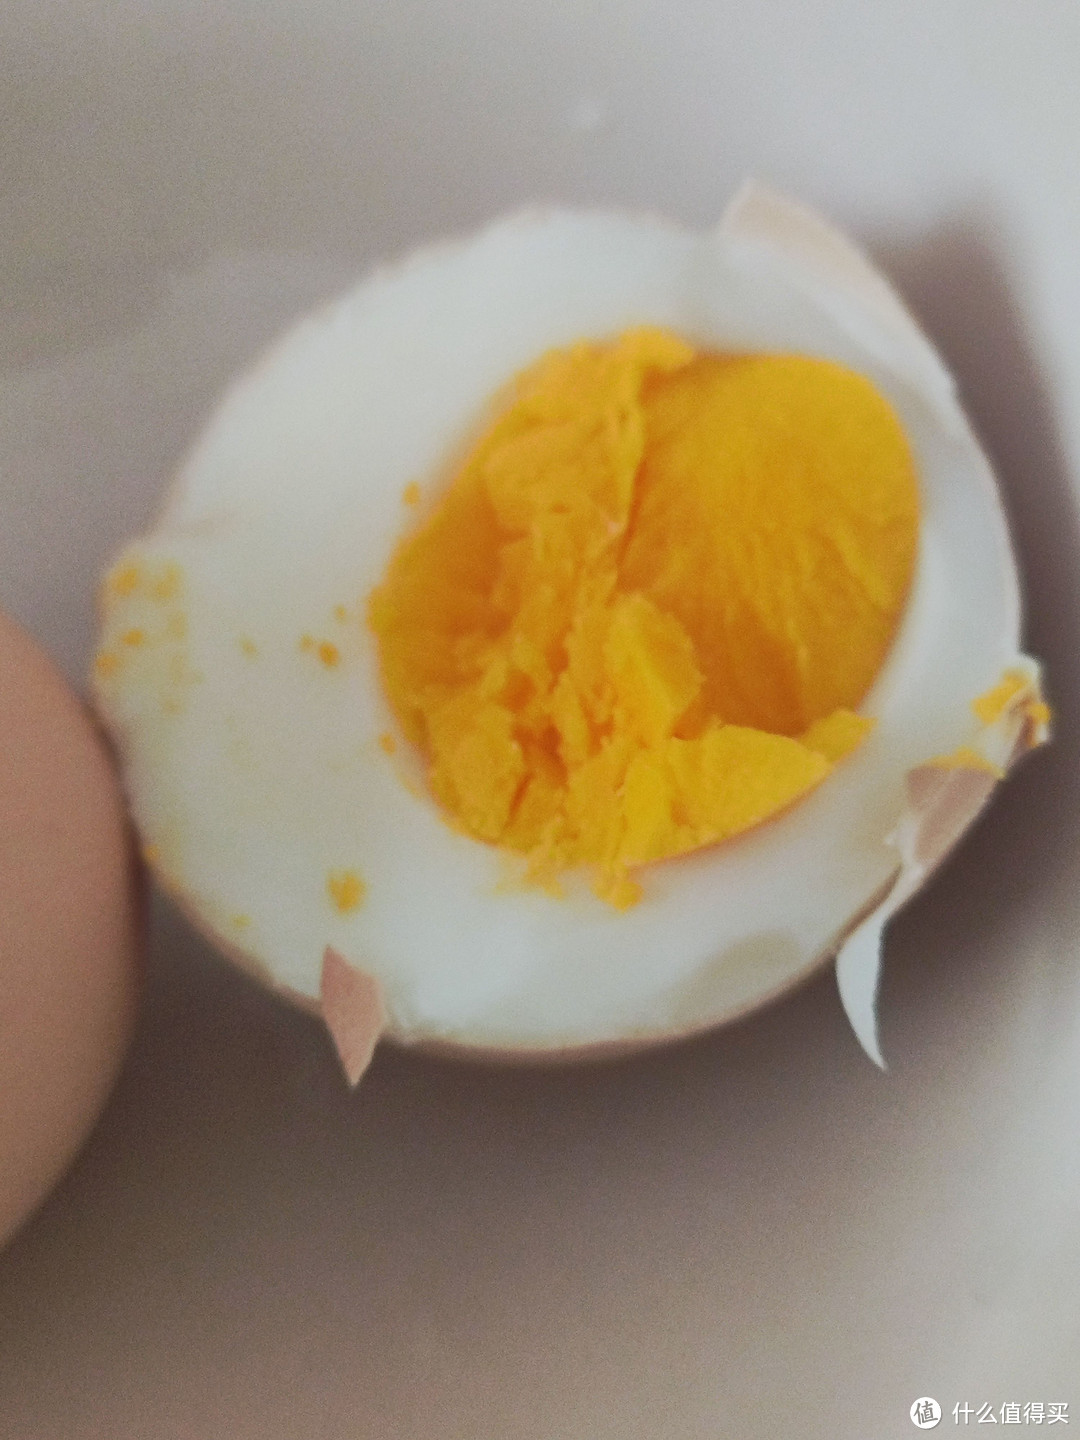 想吃溏心蛋，金沙蛋还是鸡蛋羹，这个煮蛋器任君选择